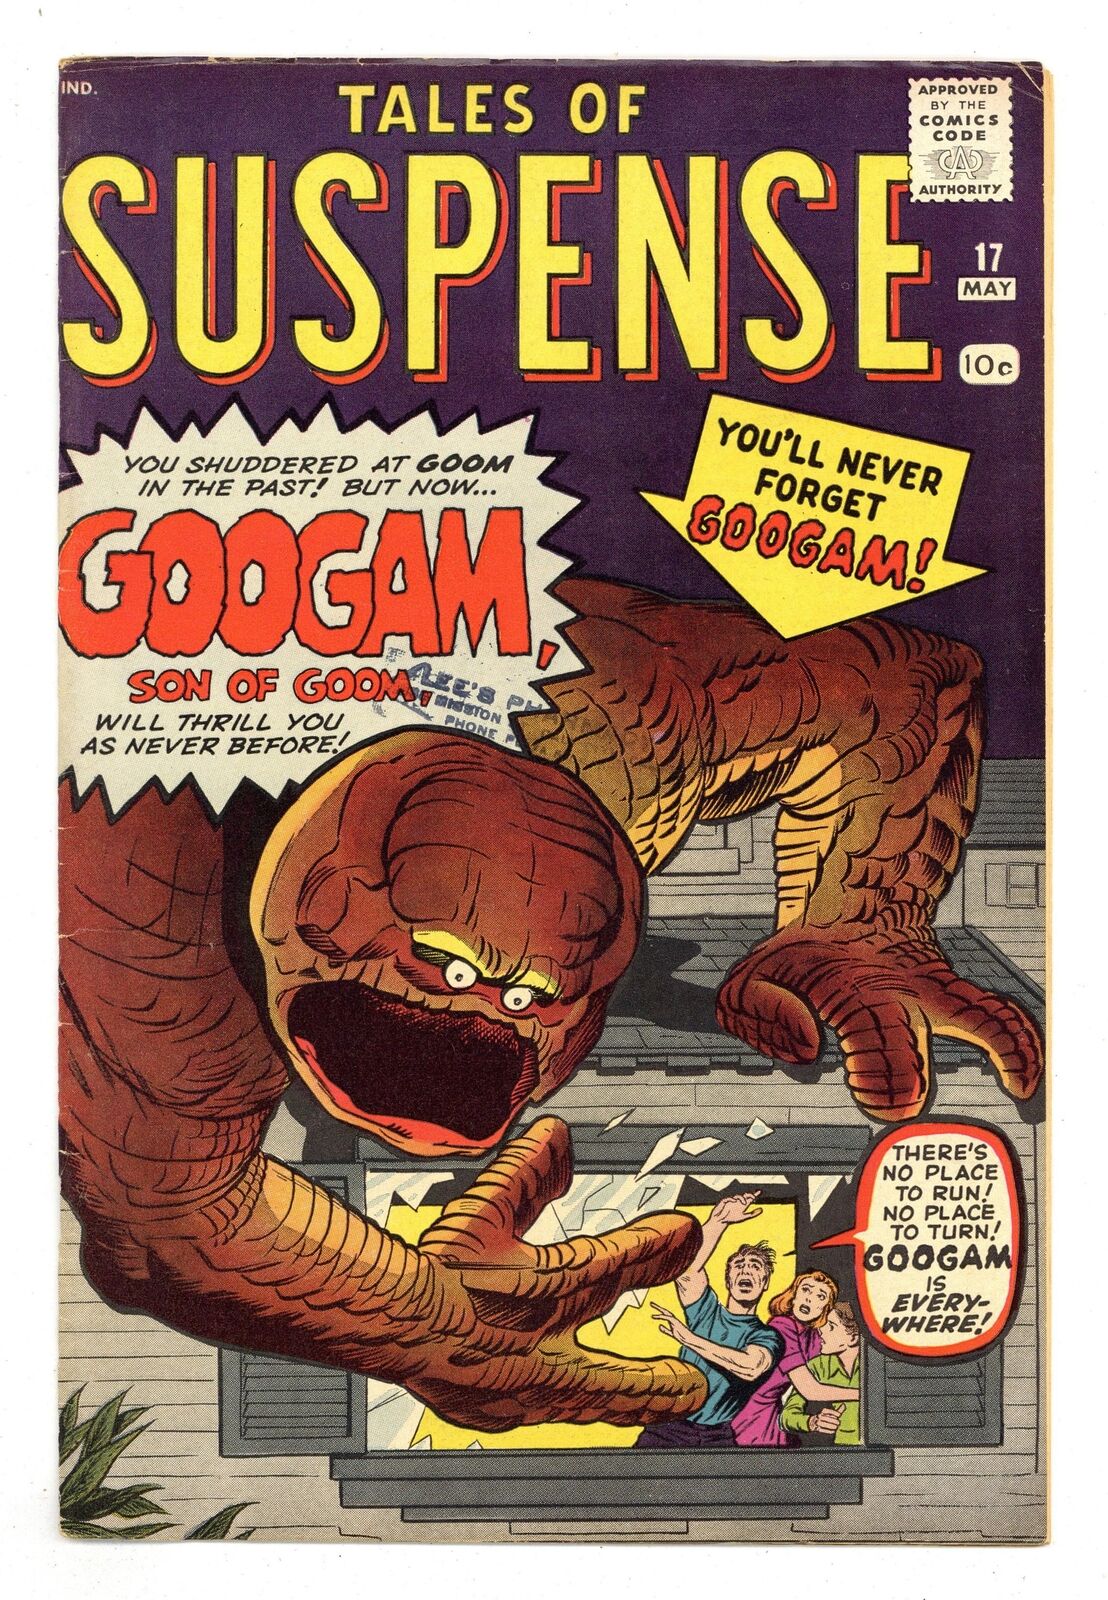 Tales of Suspense #17 VG/FN 5.0 1961